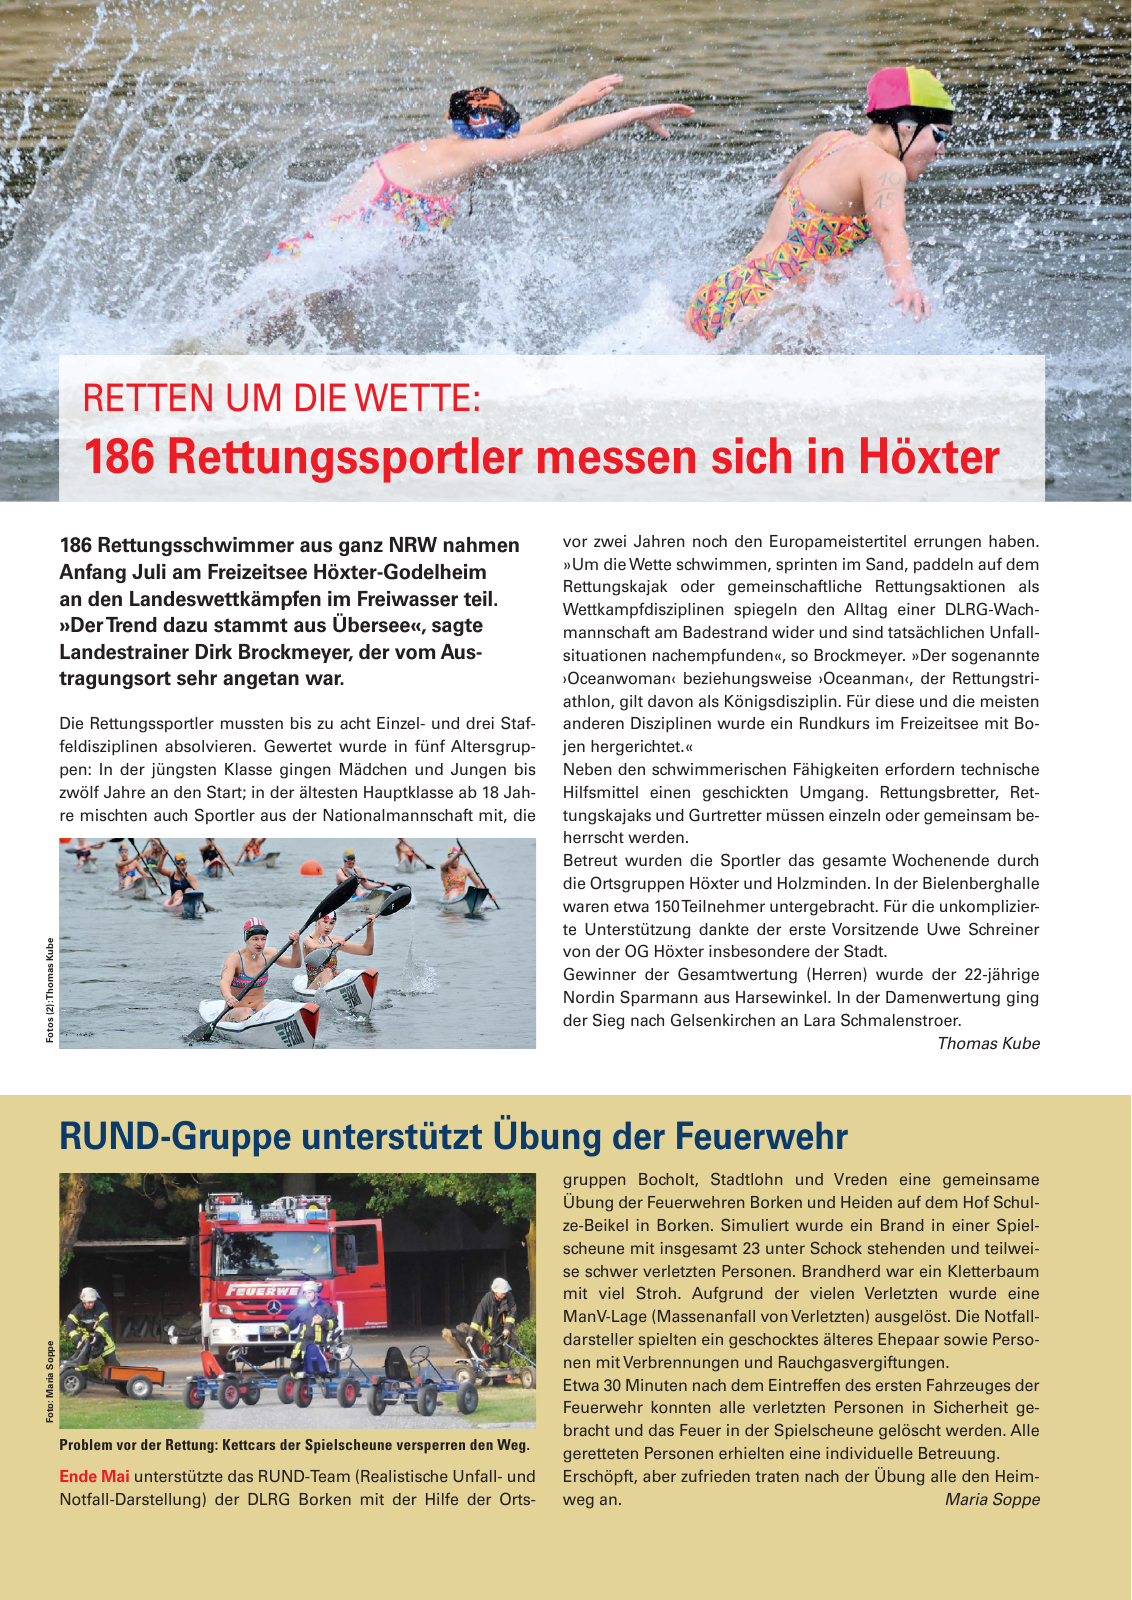 Vorschau Lebensretter 3/2017 - Regionalausgabe Westfalen Seite 7